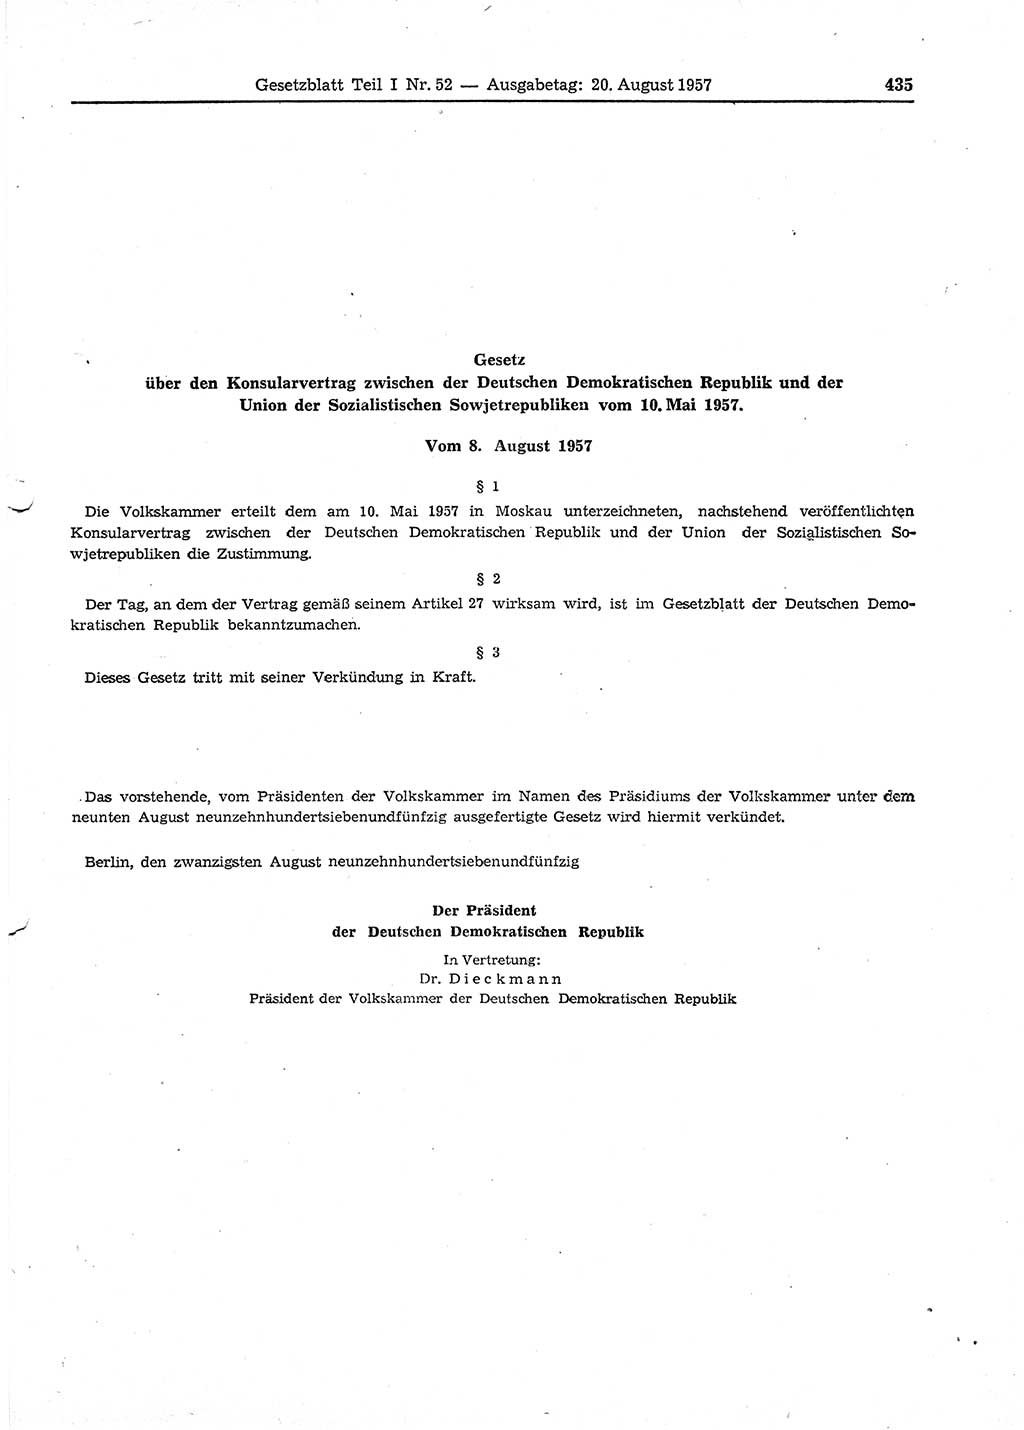 Gesetzblatt (GBl.) der Deutschen Demokratischen Republik (DDR) Teil Ⅰ 1957, Seite 435 (GBl. DDR Ⅰ 1957, S. 435)